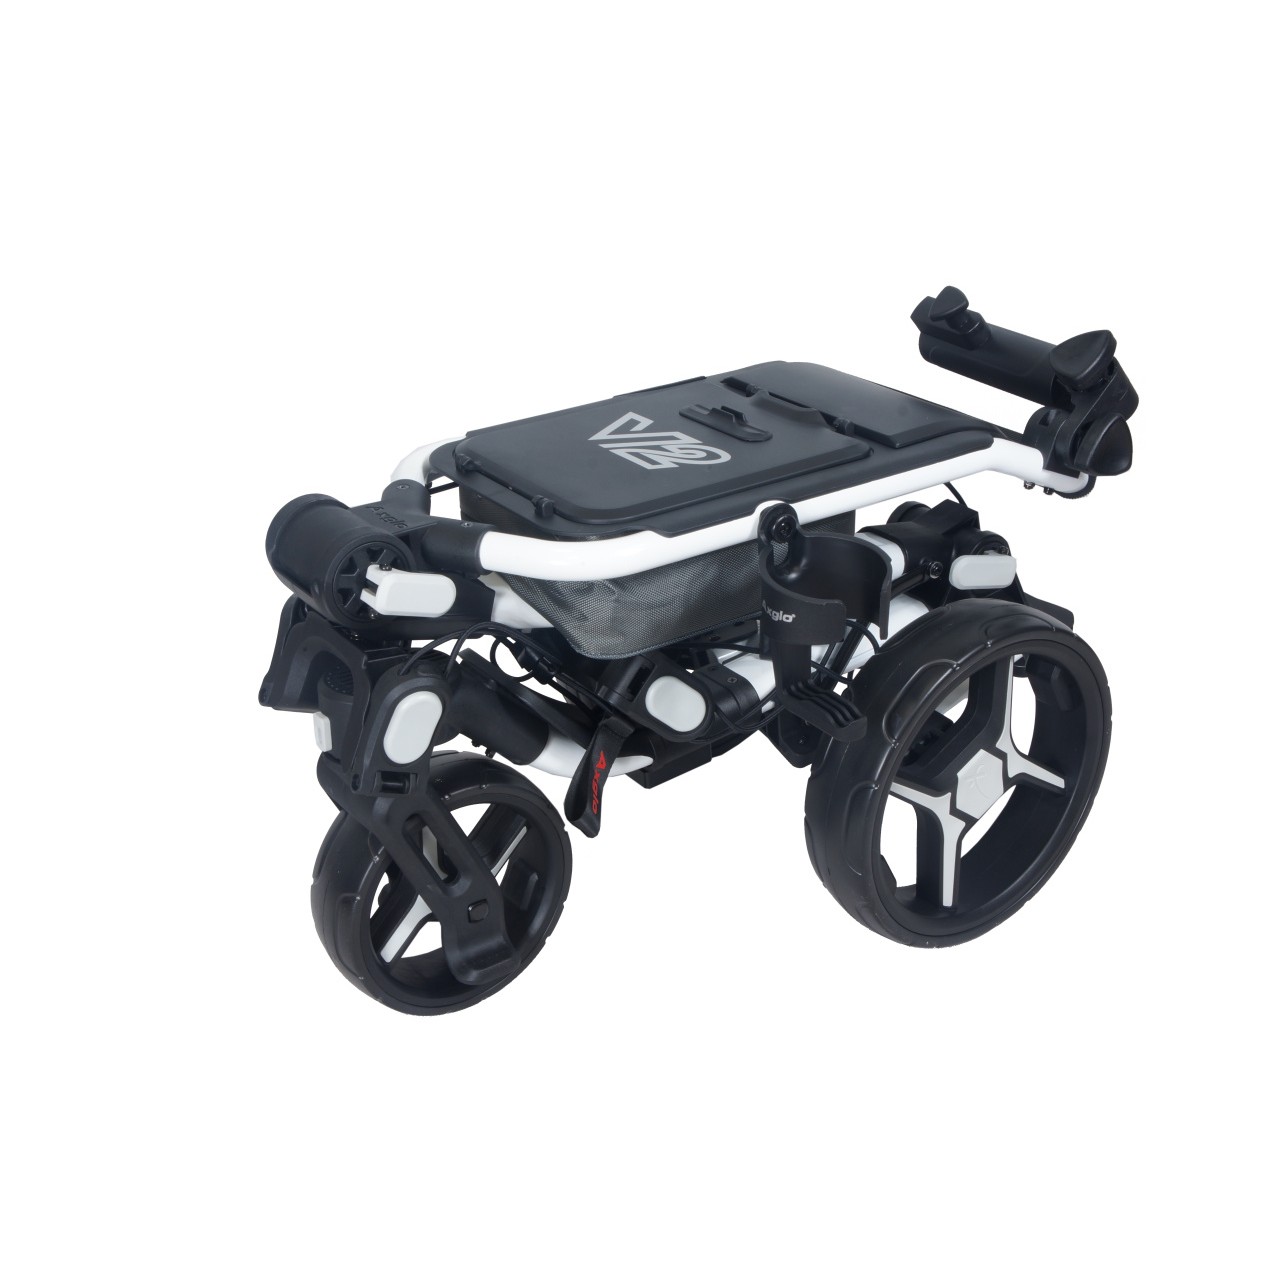 AXGLO Tri-360 V2 ruèní tøíkolový golfový vozík WHITE/GREY + ZDARMA obal na kola - zvìtšit obrázek